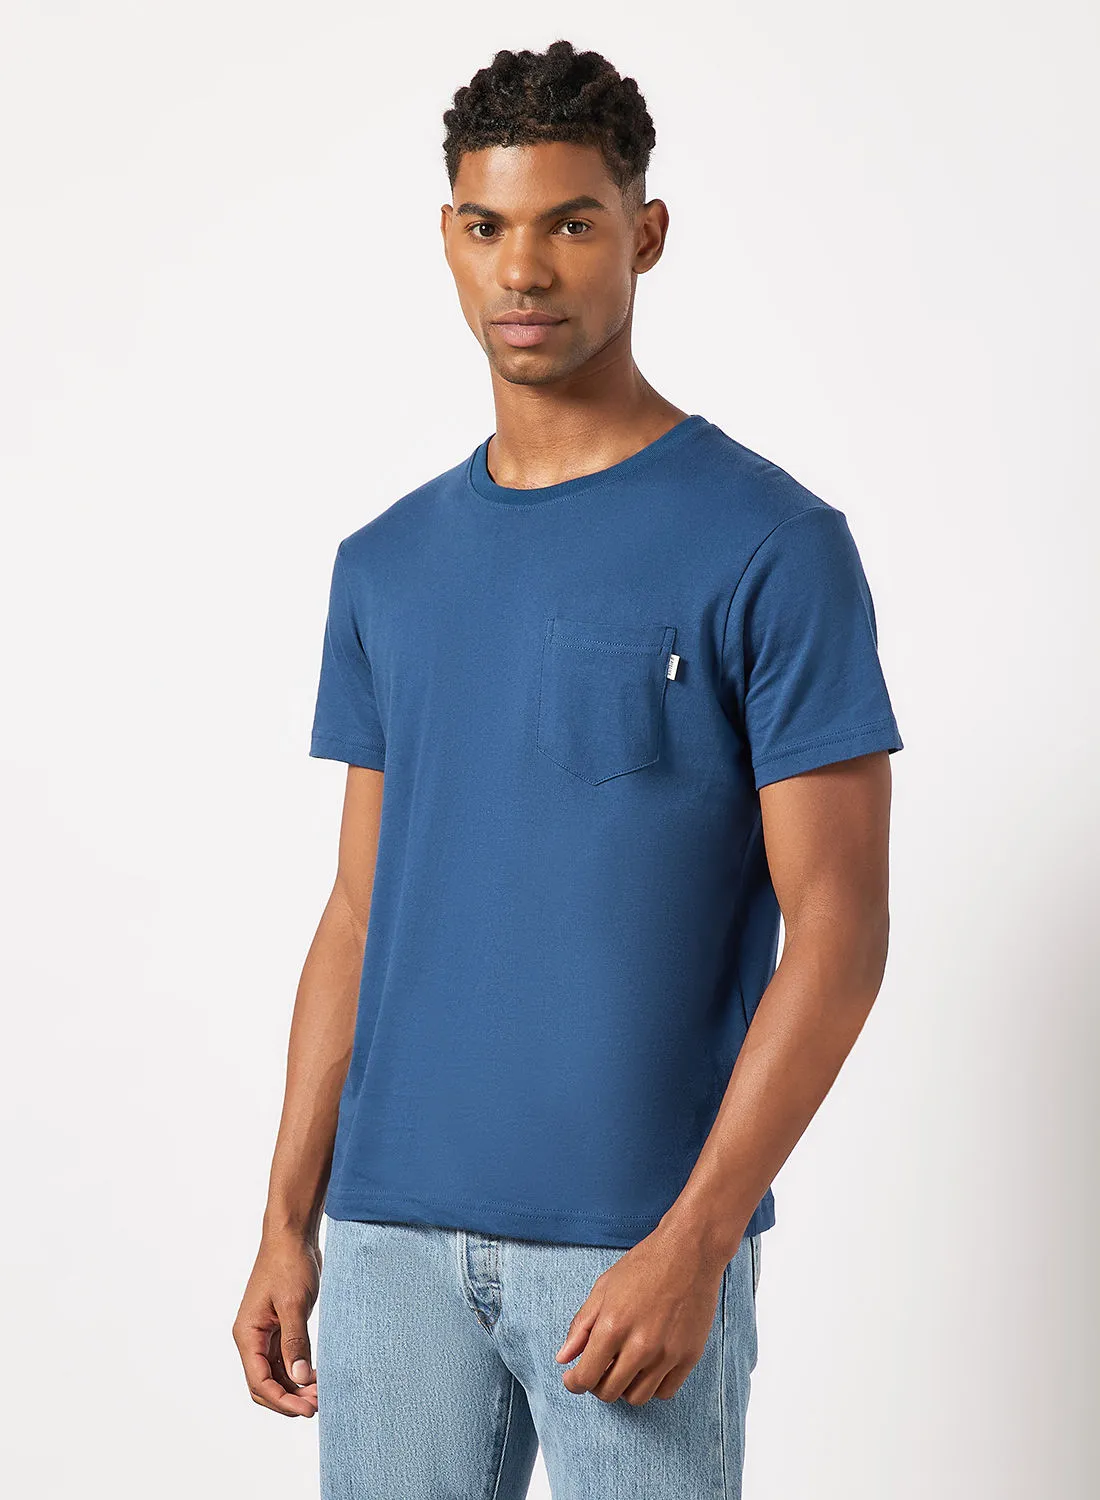 Sivvi x D'Atelier Patch Pocket T-Shirt Blue